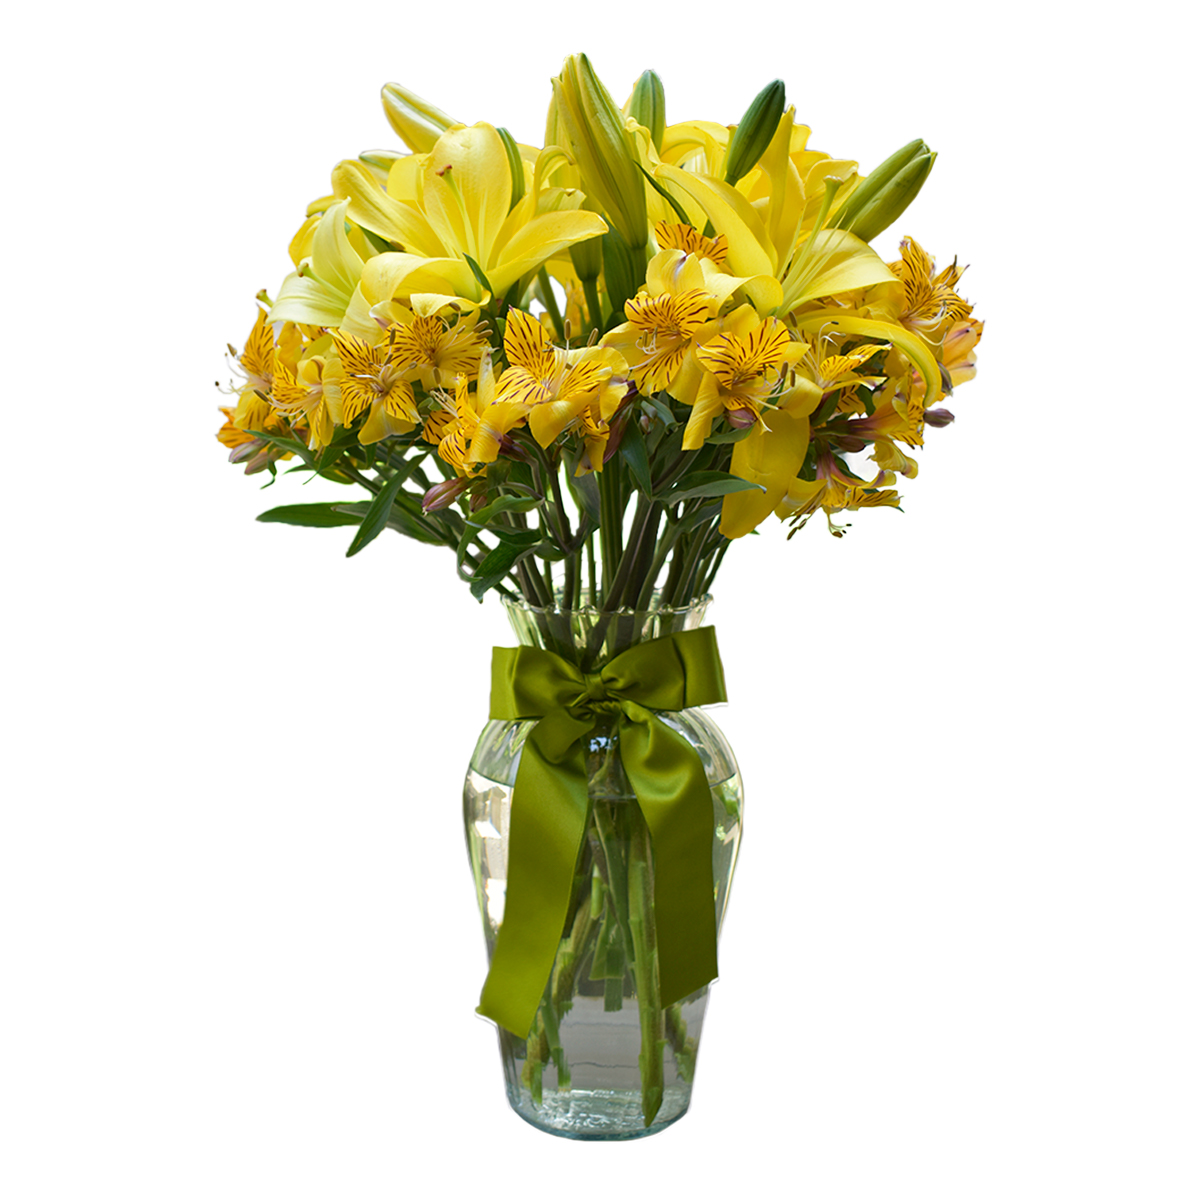 Jarrón de lilis amarillas con astromelias - Detalles a distancia | Envía  flores